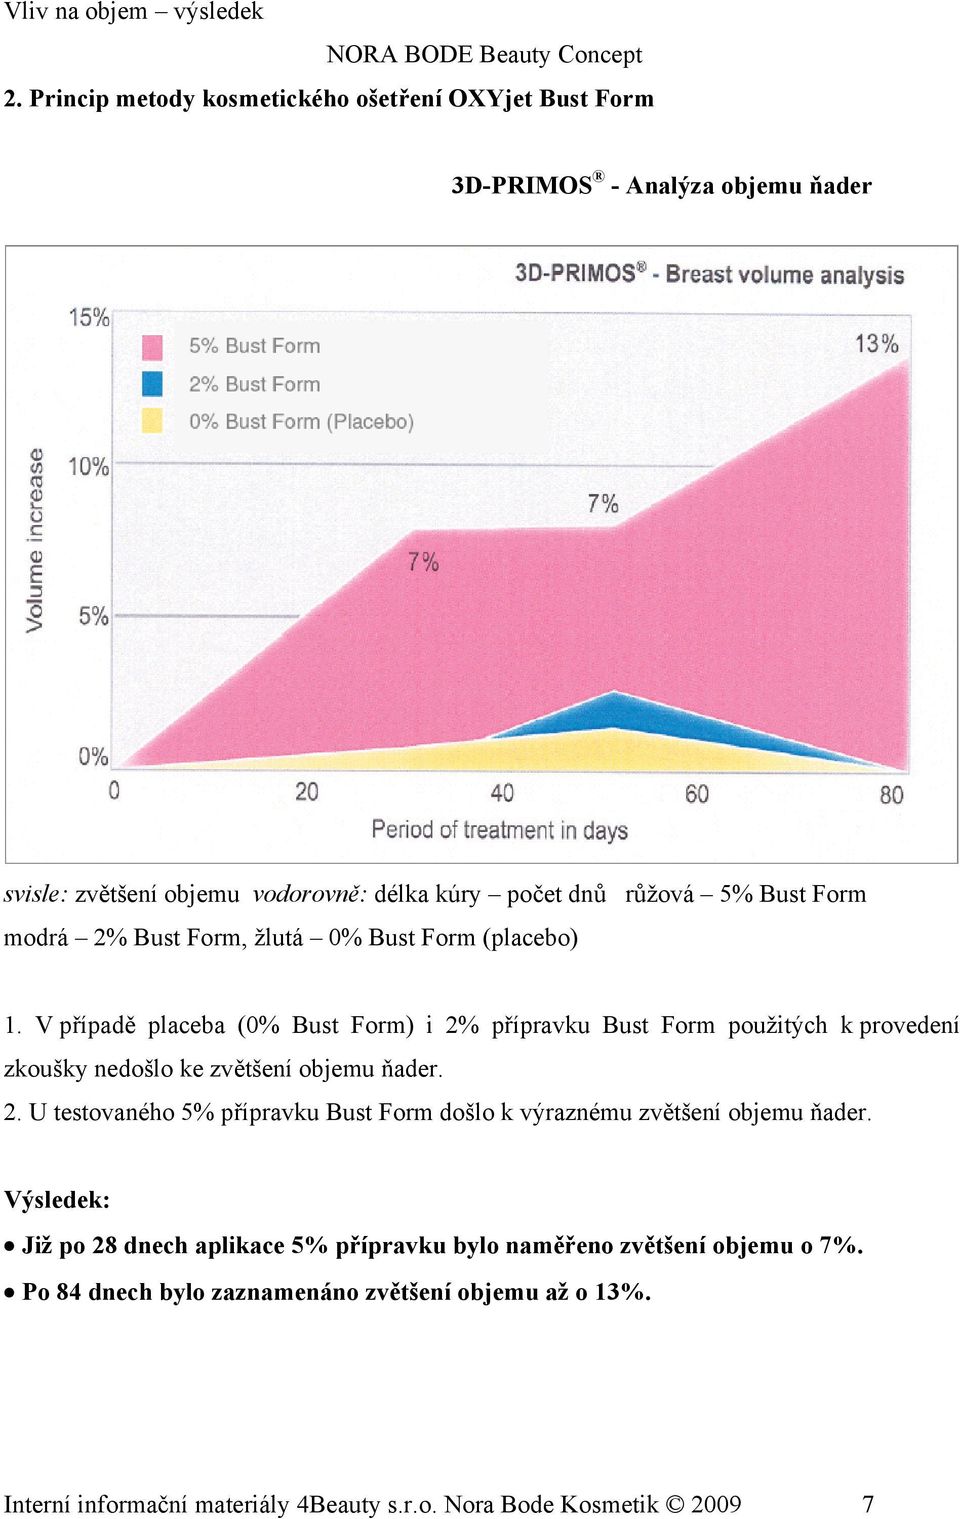 2% Bust Form, žlutá 0% Bust Form (placebo) 1. V případě placeba (0% Bust Form) i 2% přípravku Bust Form použitých k provedení zkoušky nedošlo ke zvětšení objemu ňader. 2. U testovaného 5% přípravku Bust Form došlo k výraznému zvětšení objemu ňader.